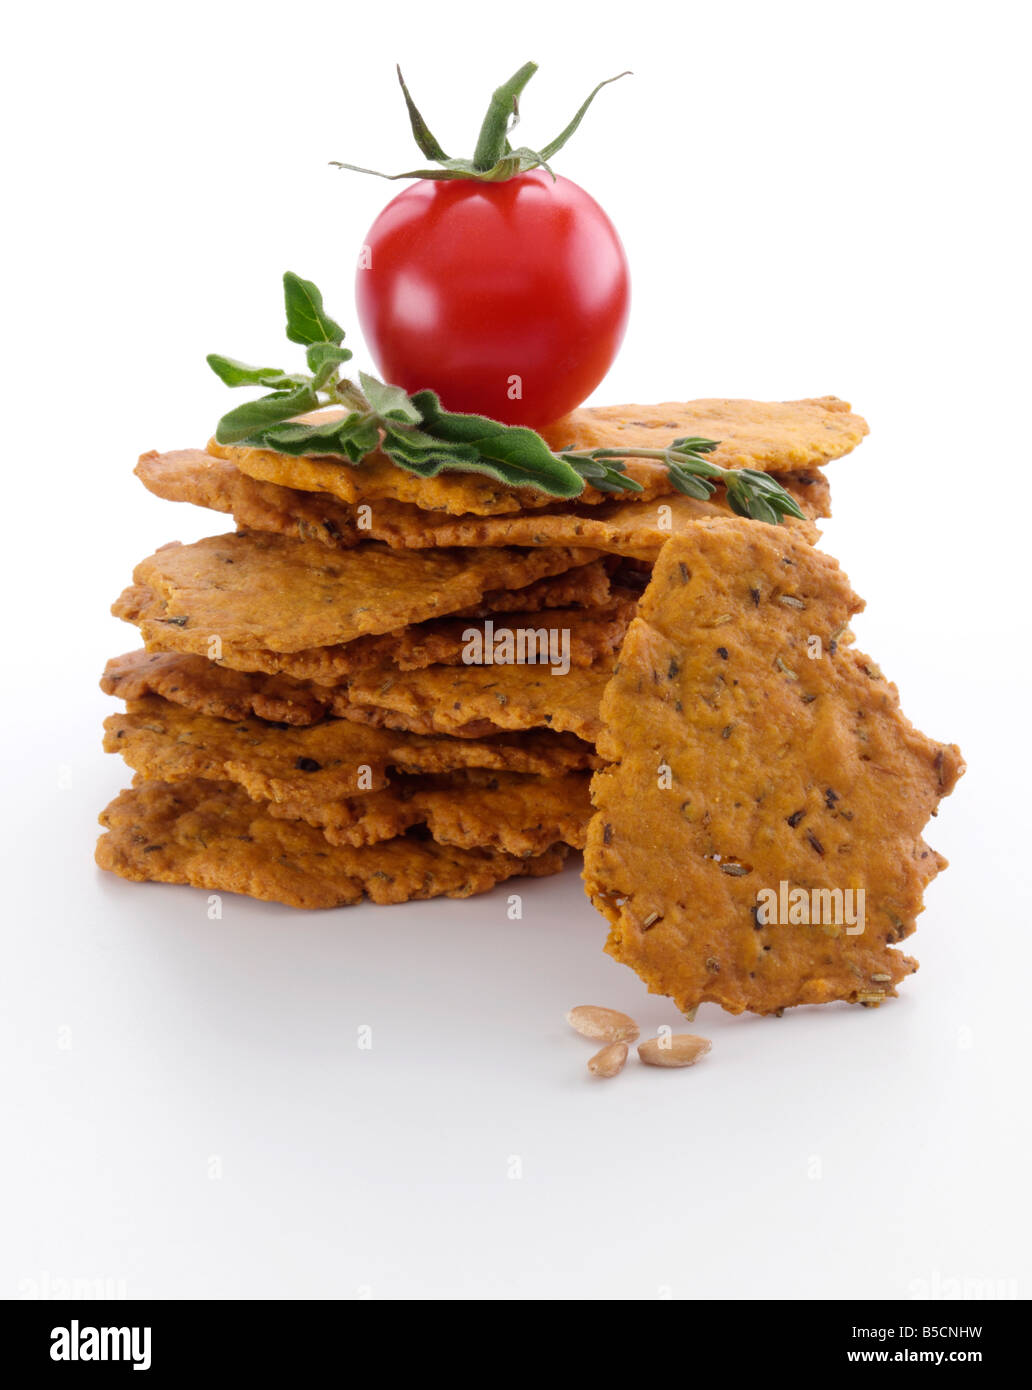 Il pomodoro aromatizzato snack di farro editoriale della salute alimentare Foto Stock